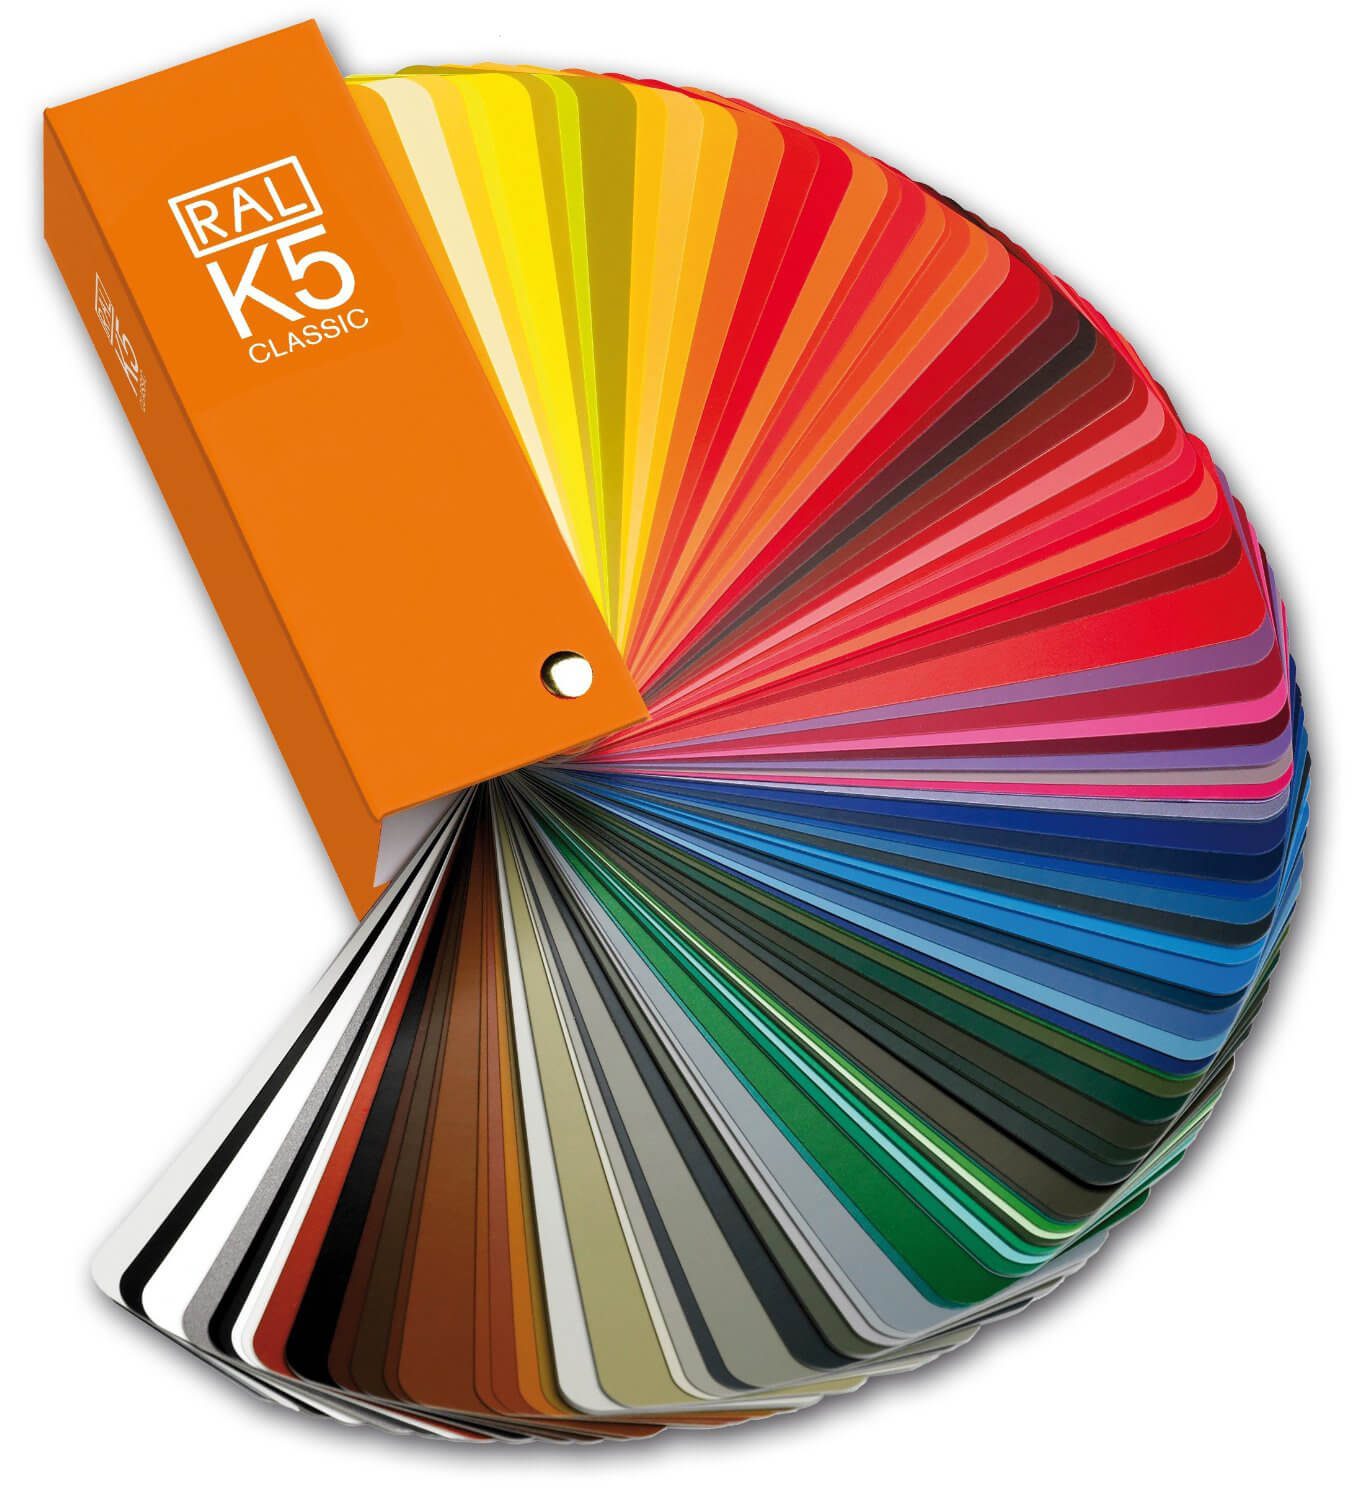 Zdjęcie błyszczącego wentylatora w kolorze RAL K5